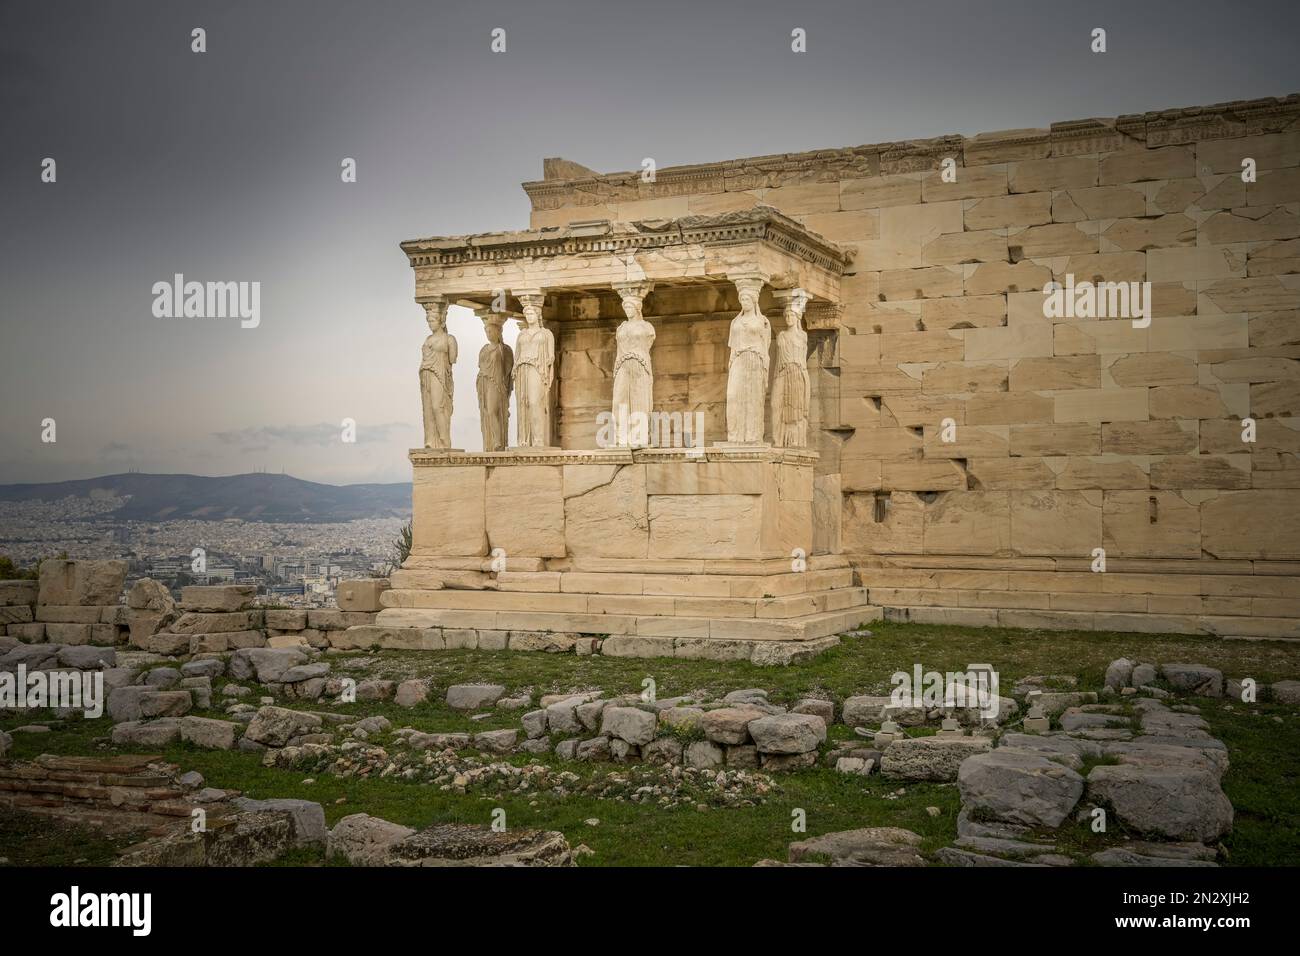 Säulenfiguren der Karyatiden am Erechtheion Tempel, Akropolis, Athen, Griechenland Stock Photo